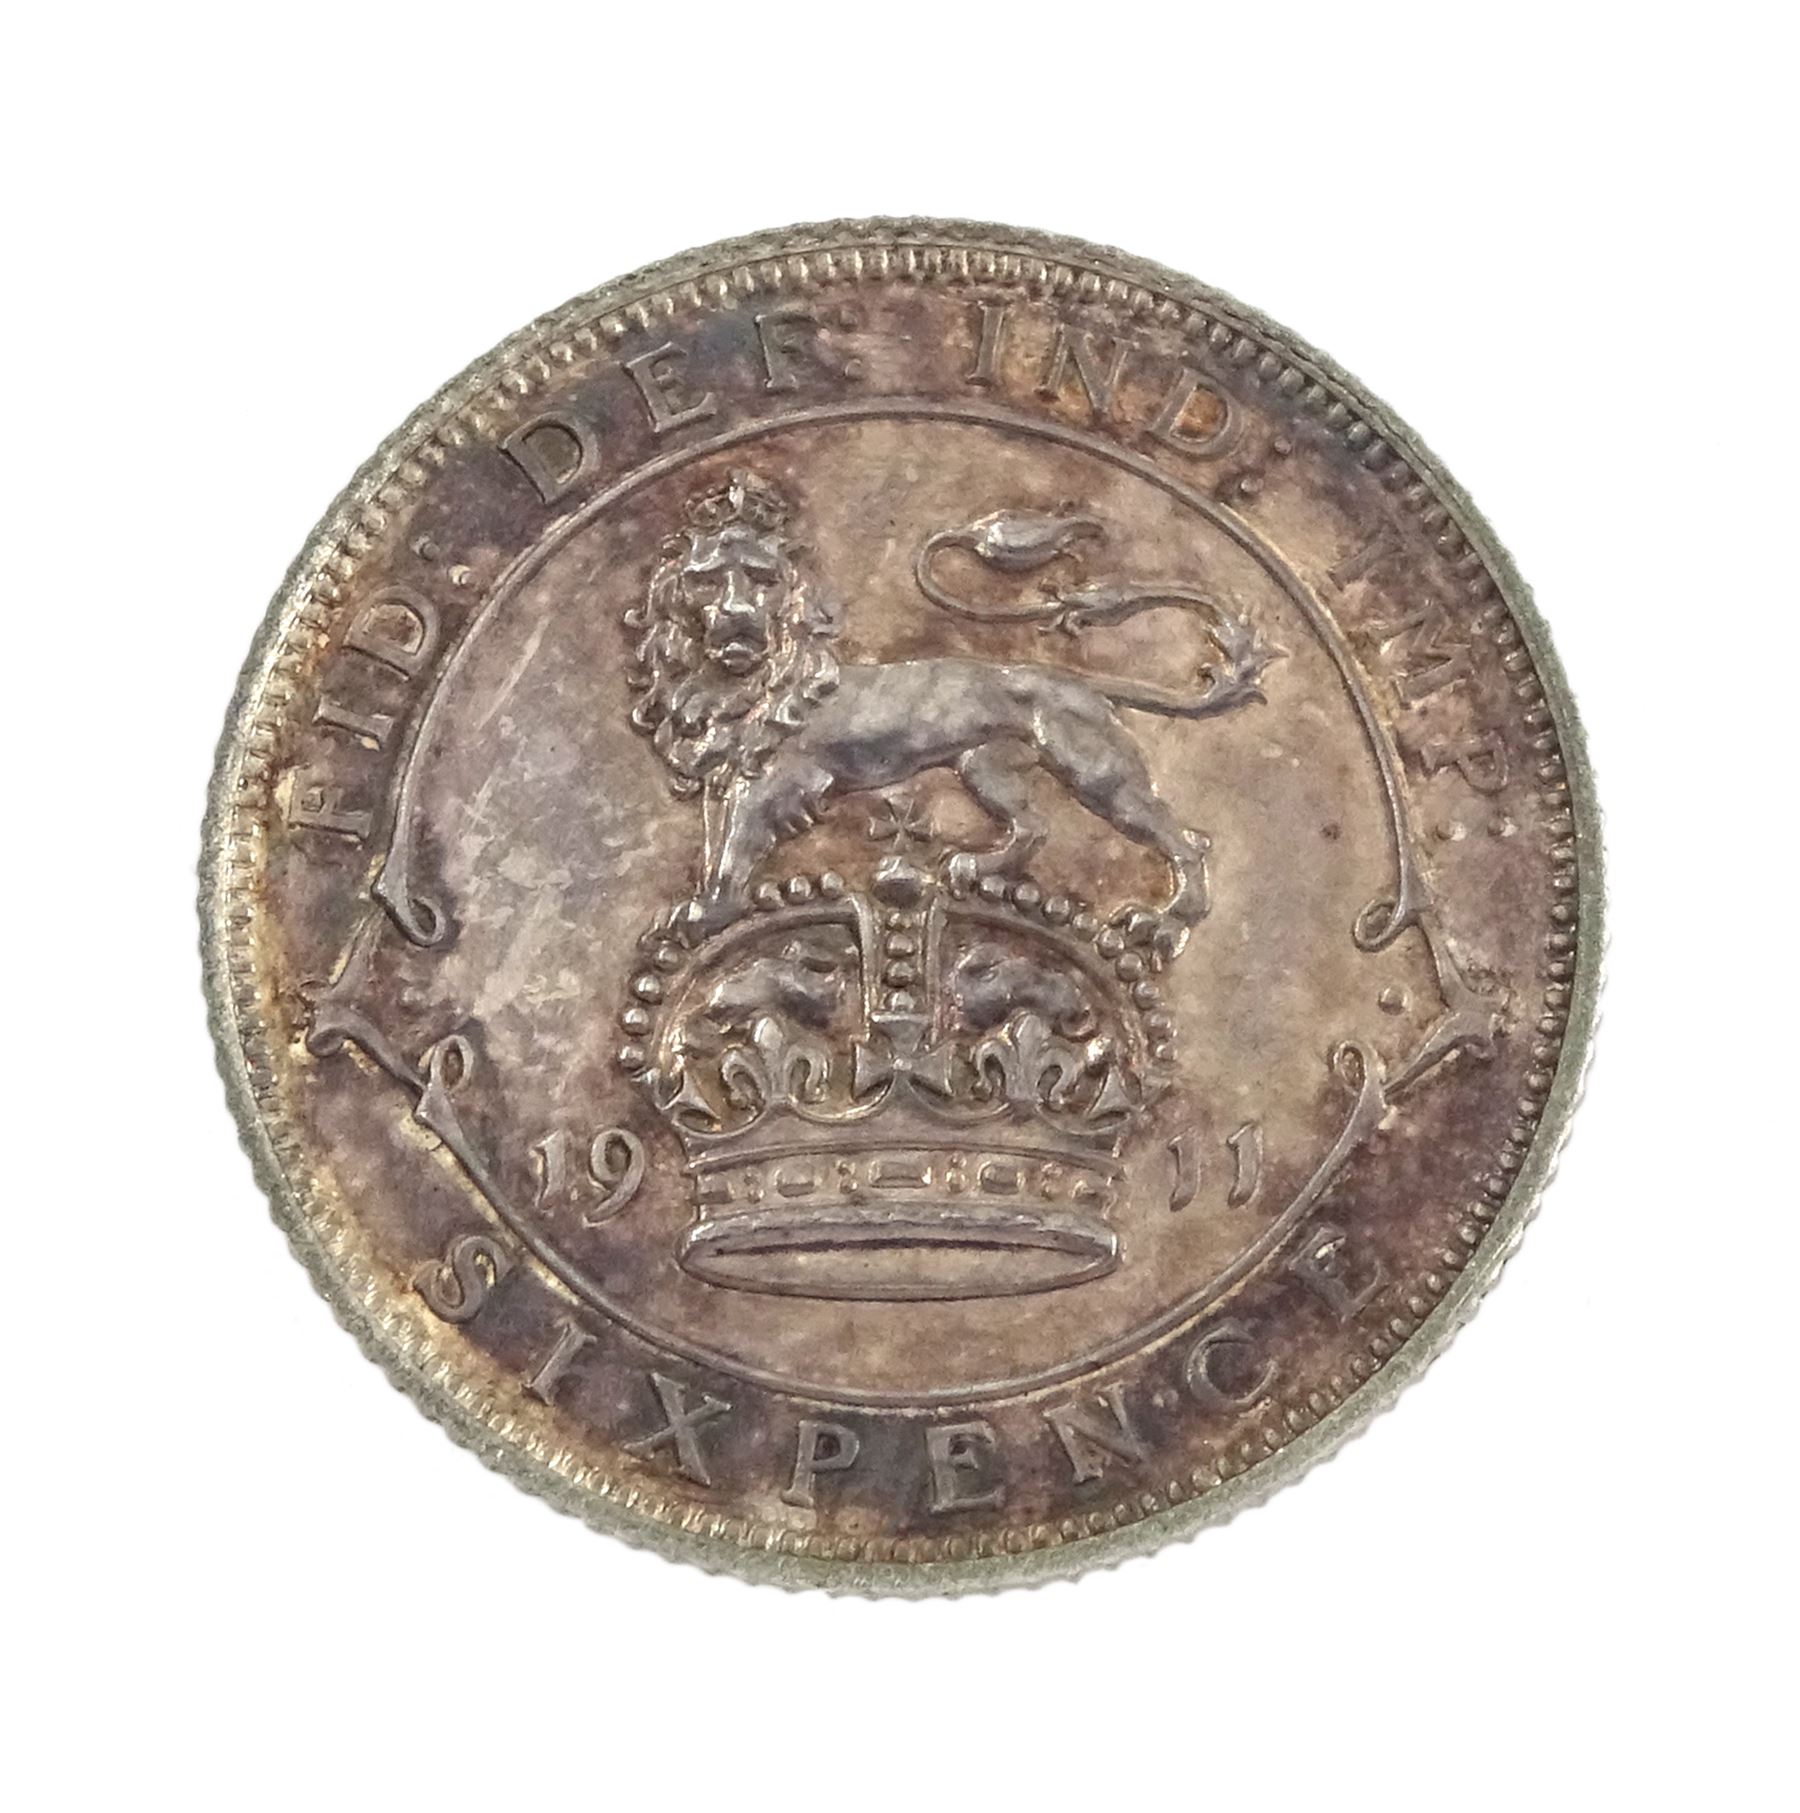 King George V 1911 proof short coin set - Image 9 of 24